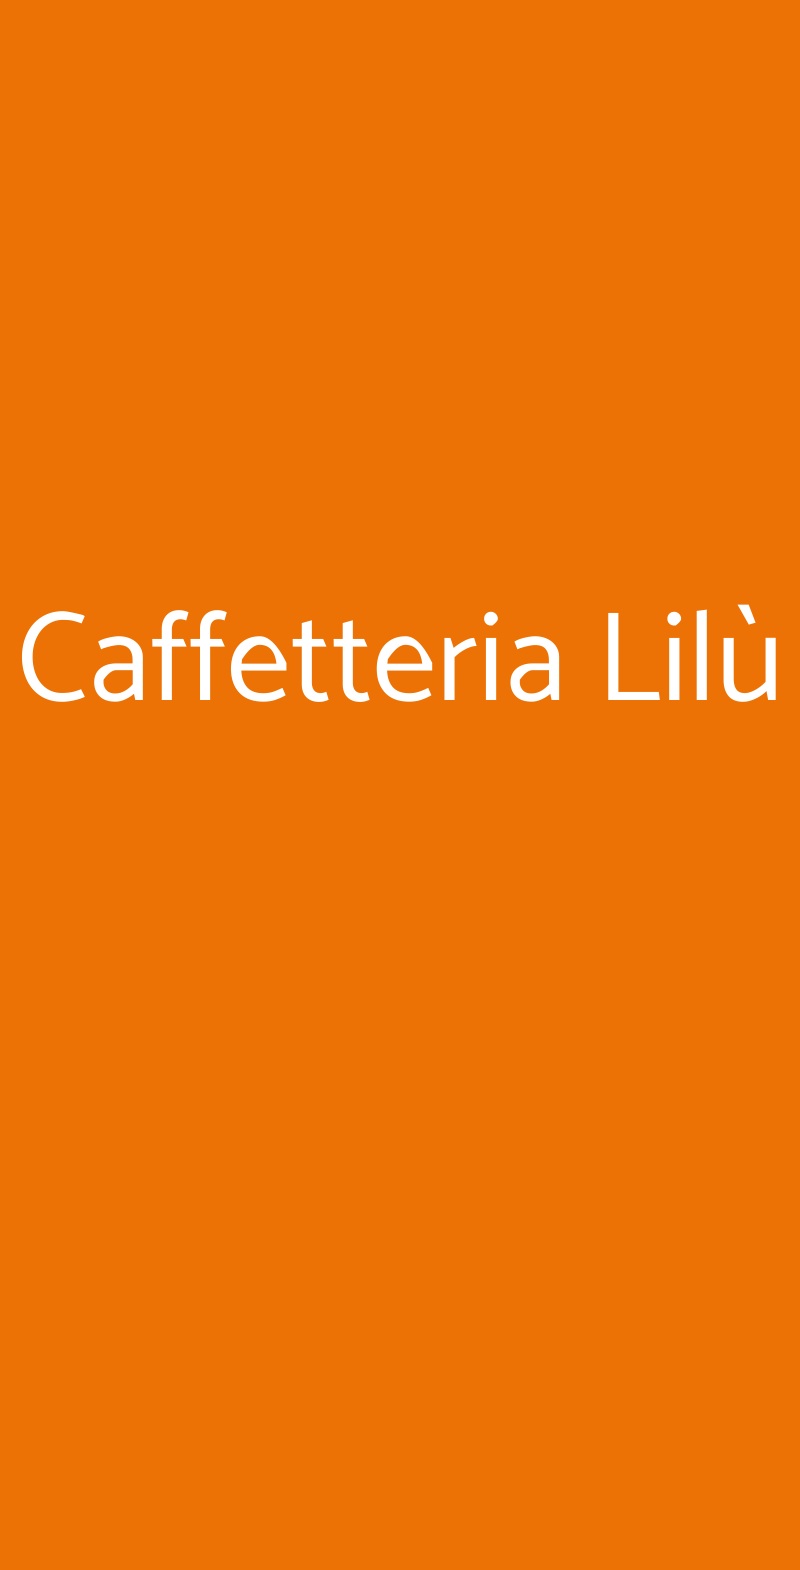 Caffetteria Lilù Bologna menù 1 pagina